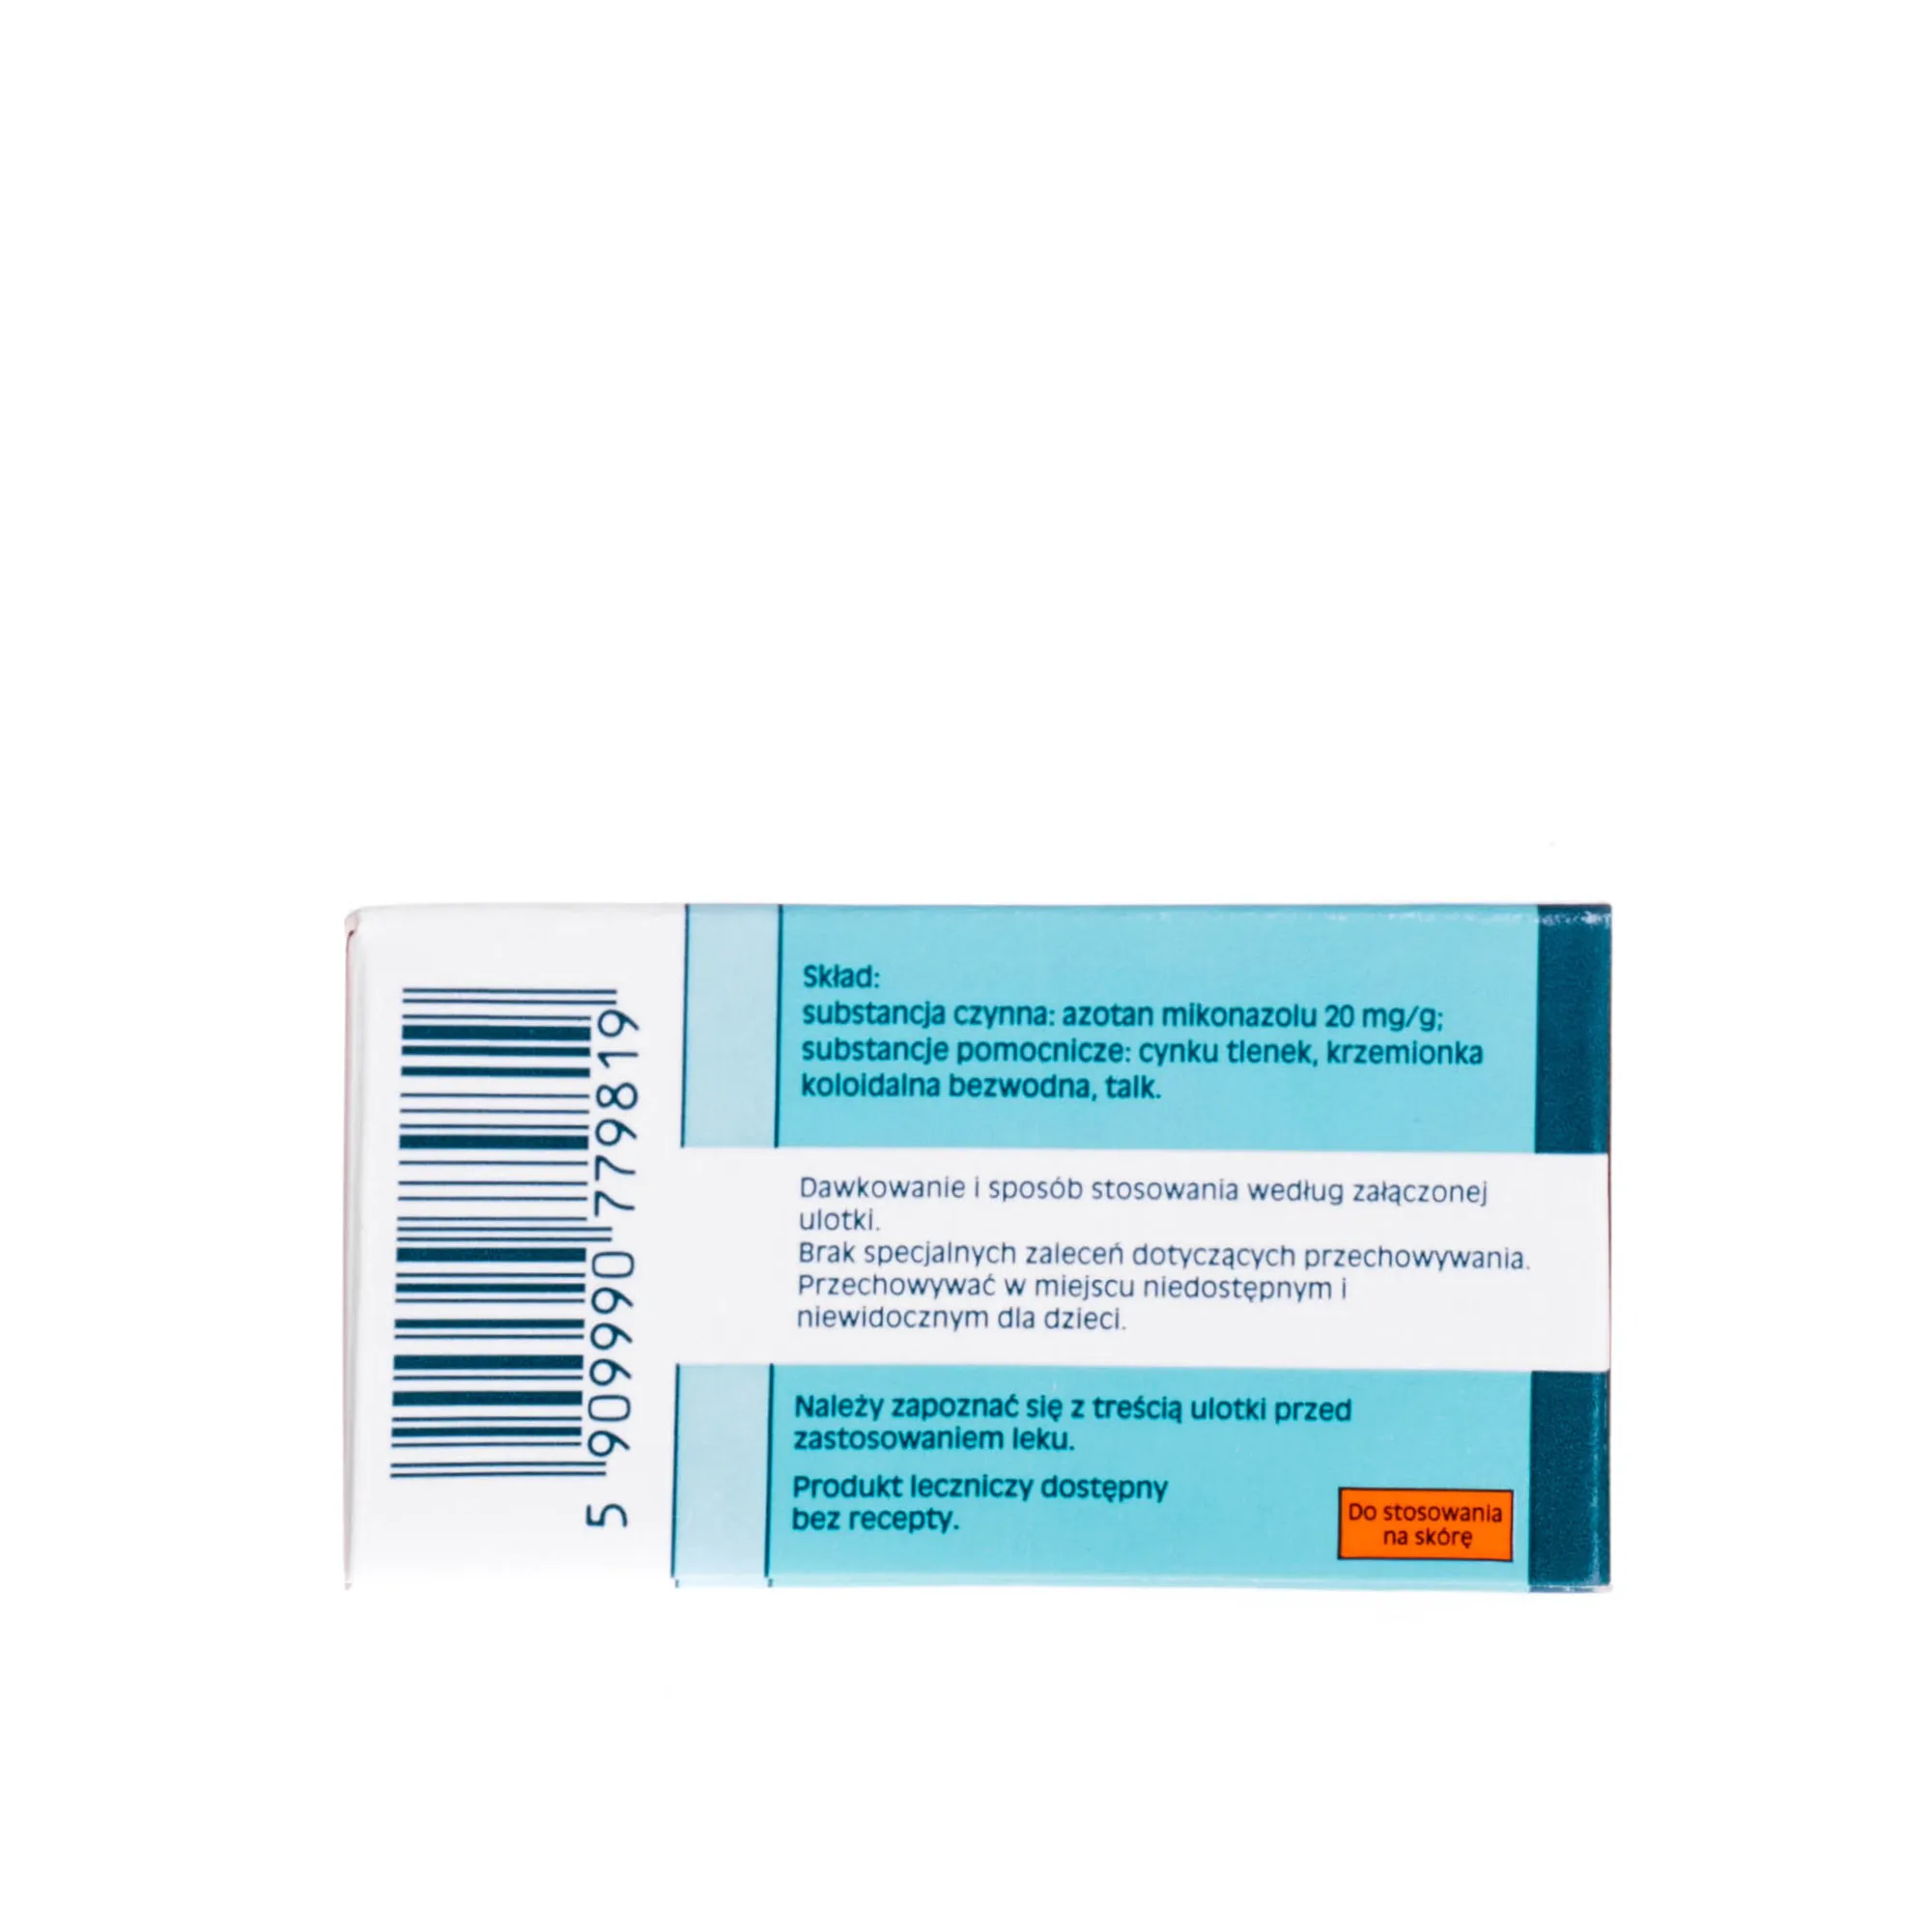 Daktarin 20 mg/g - puder leczniczy działający przeciwgrzybiczo, 20 g 